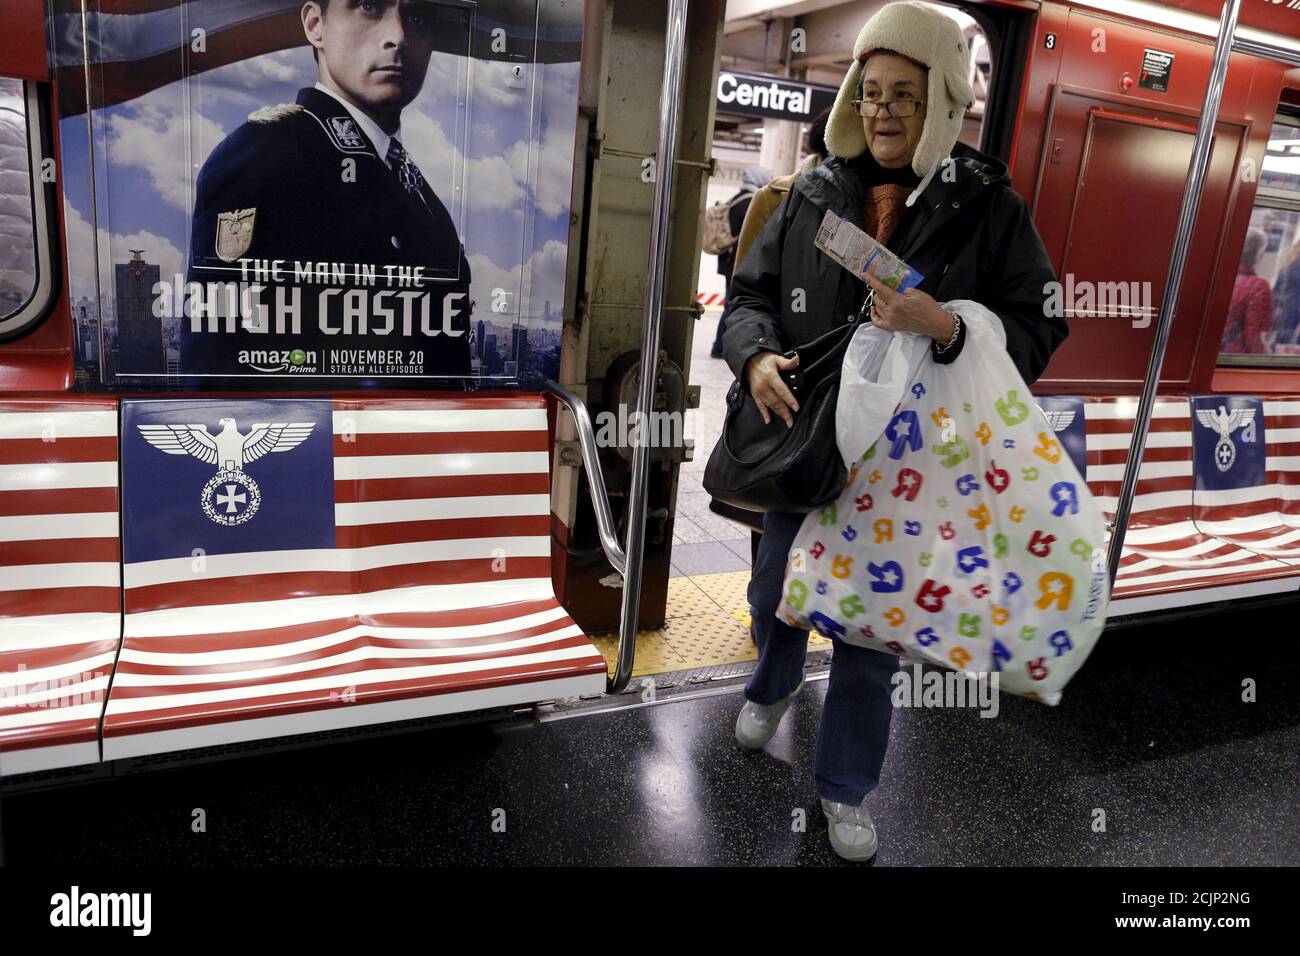 Passagiere steigen in einen U-Bahn-Zug des 42nd Street Shuttle ein, der mit  Werbung für die Amazon-Serie 